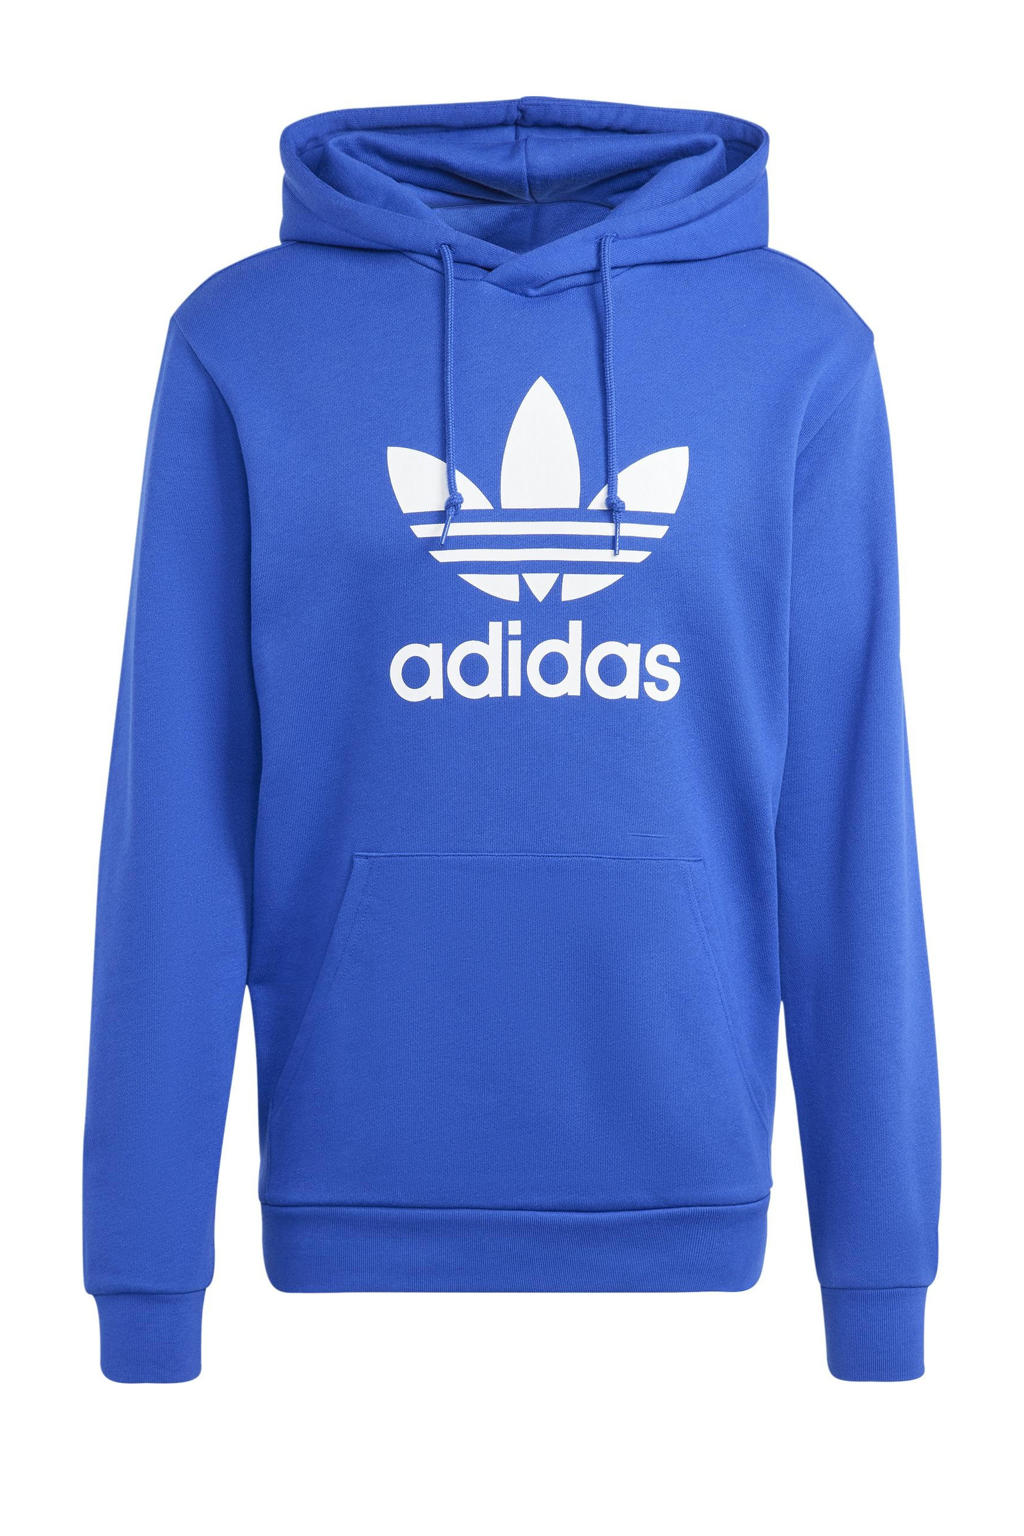 Blauw en witte heren adidas Originals hoodie van katoen met logo dessin, lange mouwen en capuchon